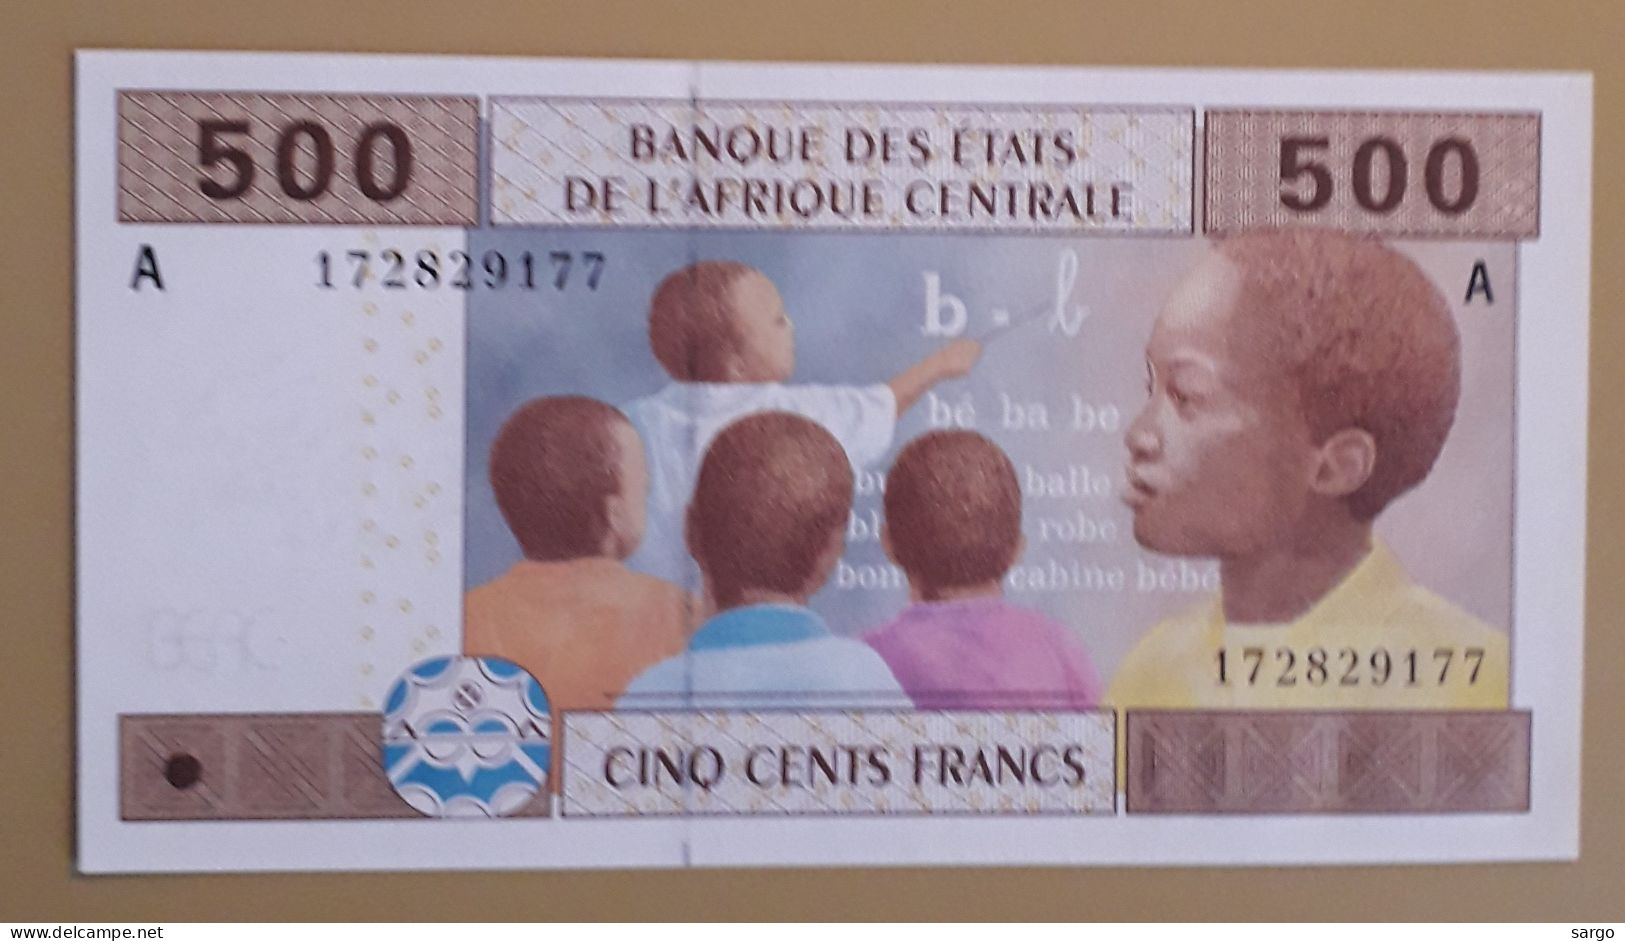 CENTRAL AFRICAN STATE - GABON - 500 FRANCS - 2002 - 2021 - UNCIRC - P 06 - BANKNOTES - PAPER MONEY - CARTAMONETA - - Estados Centroafricanos